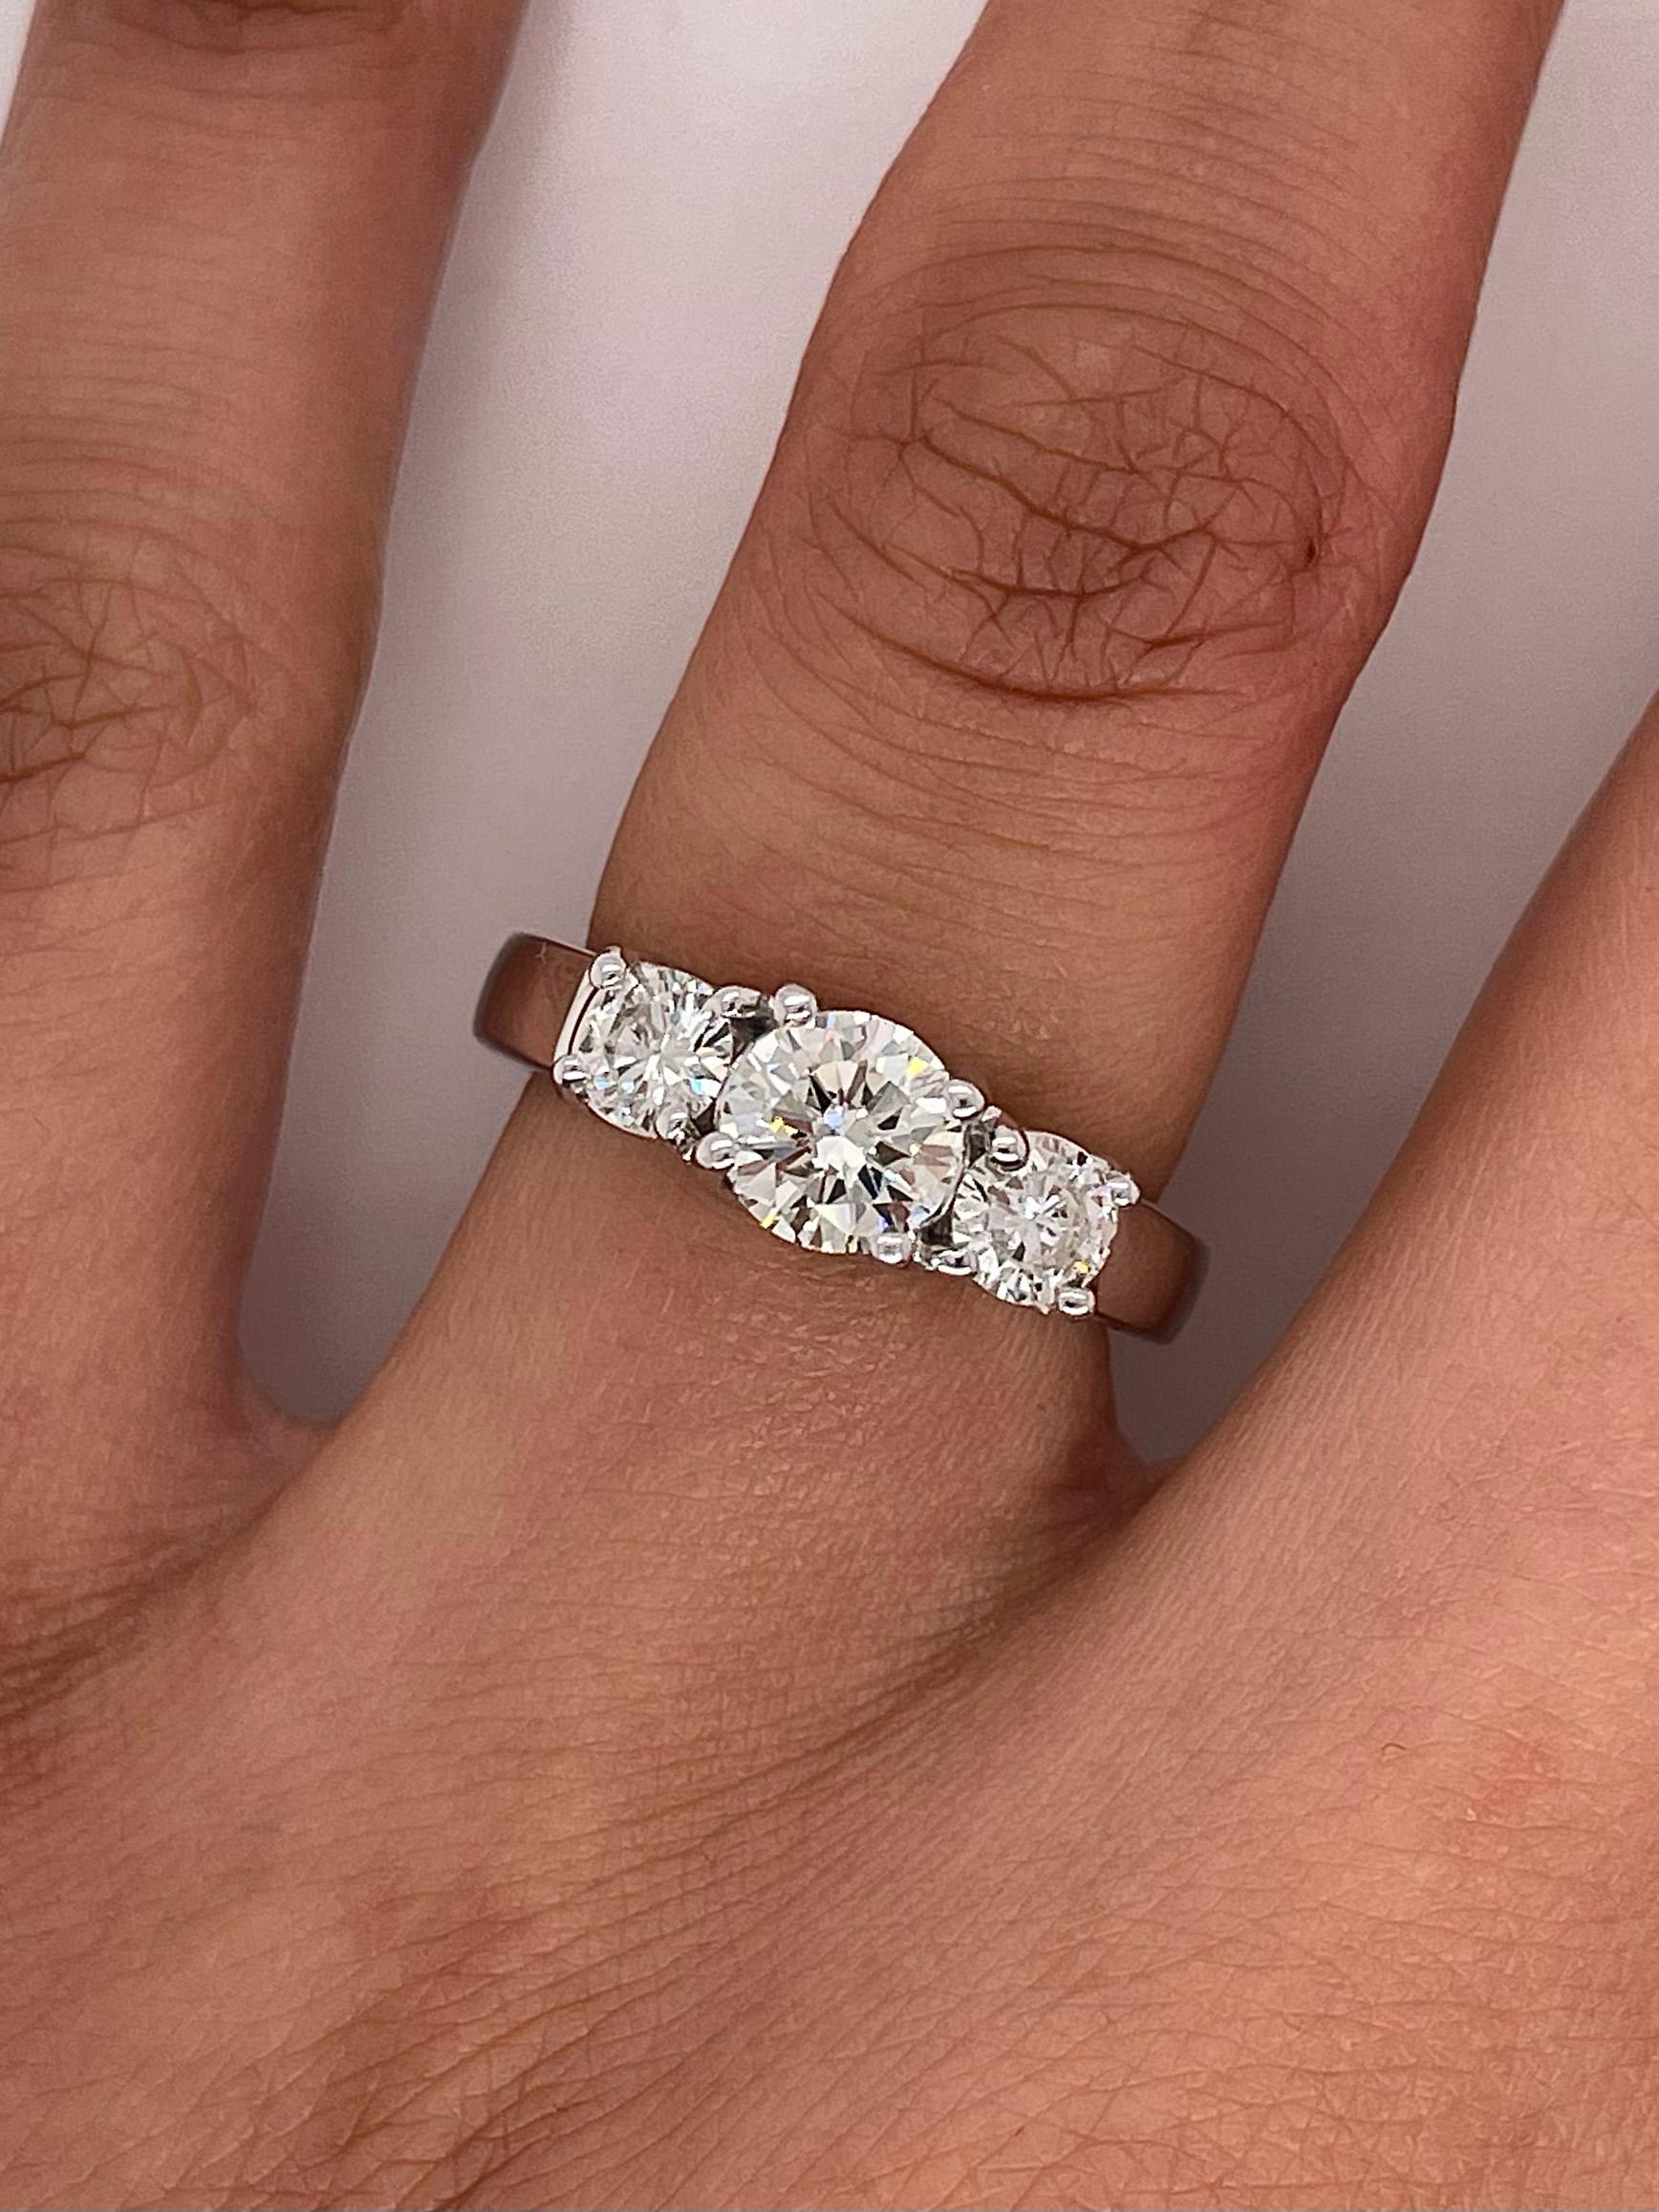 3 stone diamond ring price